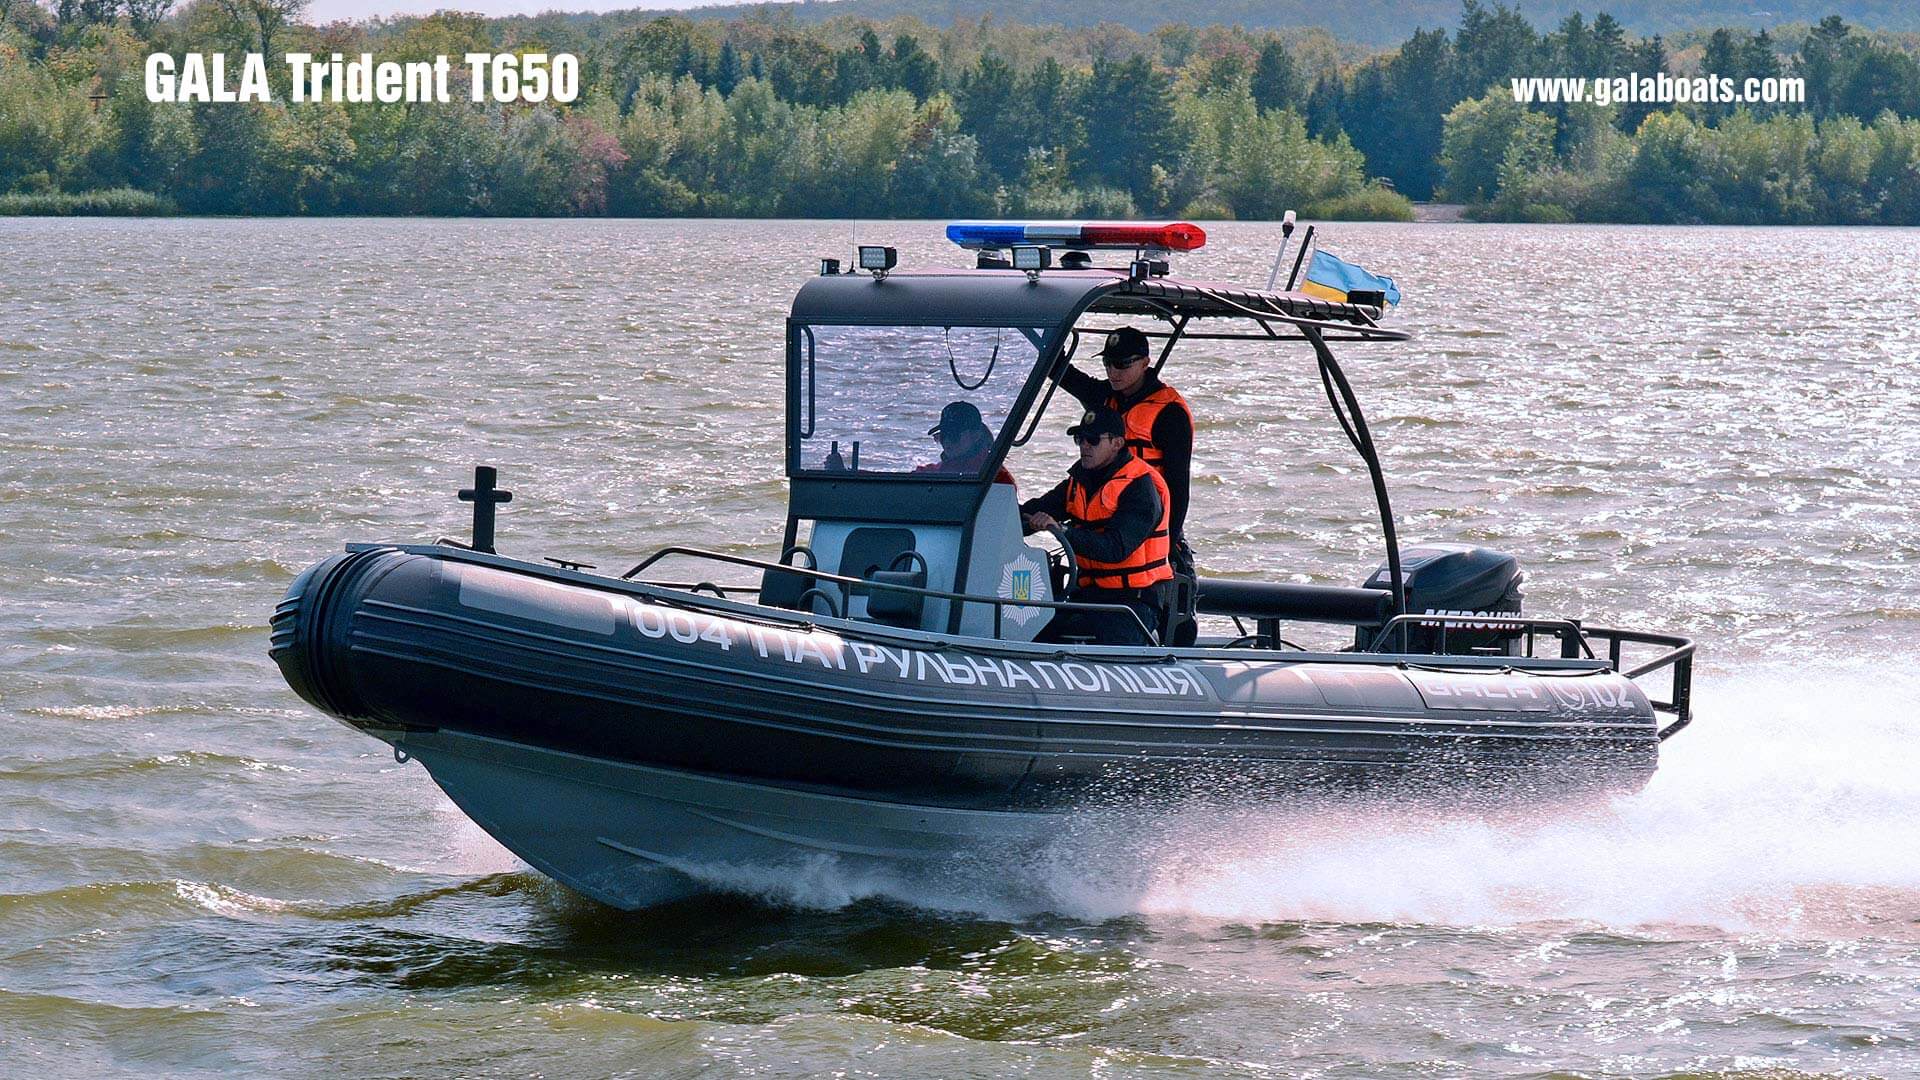 Профессиональная надувная лодка с жестким алюминиевым дном GALA Trident T650, Надувная лодка с жестким дном GALA Trident T650, Надувная лодка с жестким дном GALA T650, Надувная лодка GALA T650, Надувная лодка GALA T650, GALA T650, лодка с жестким дном, алюминиевый риб, алюминиевый RIB, RIB, лодка для полиции, лодка для спецслужб